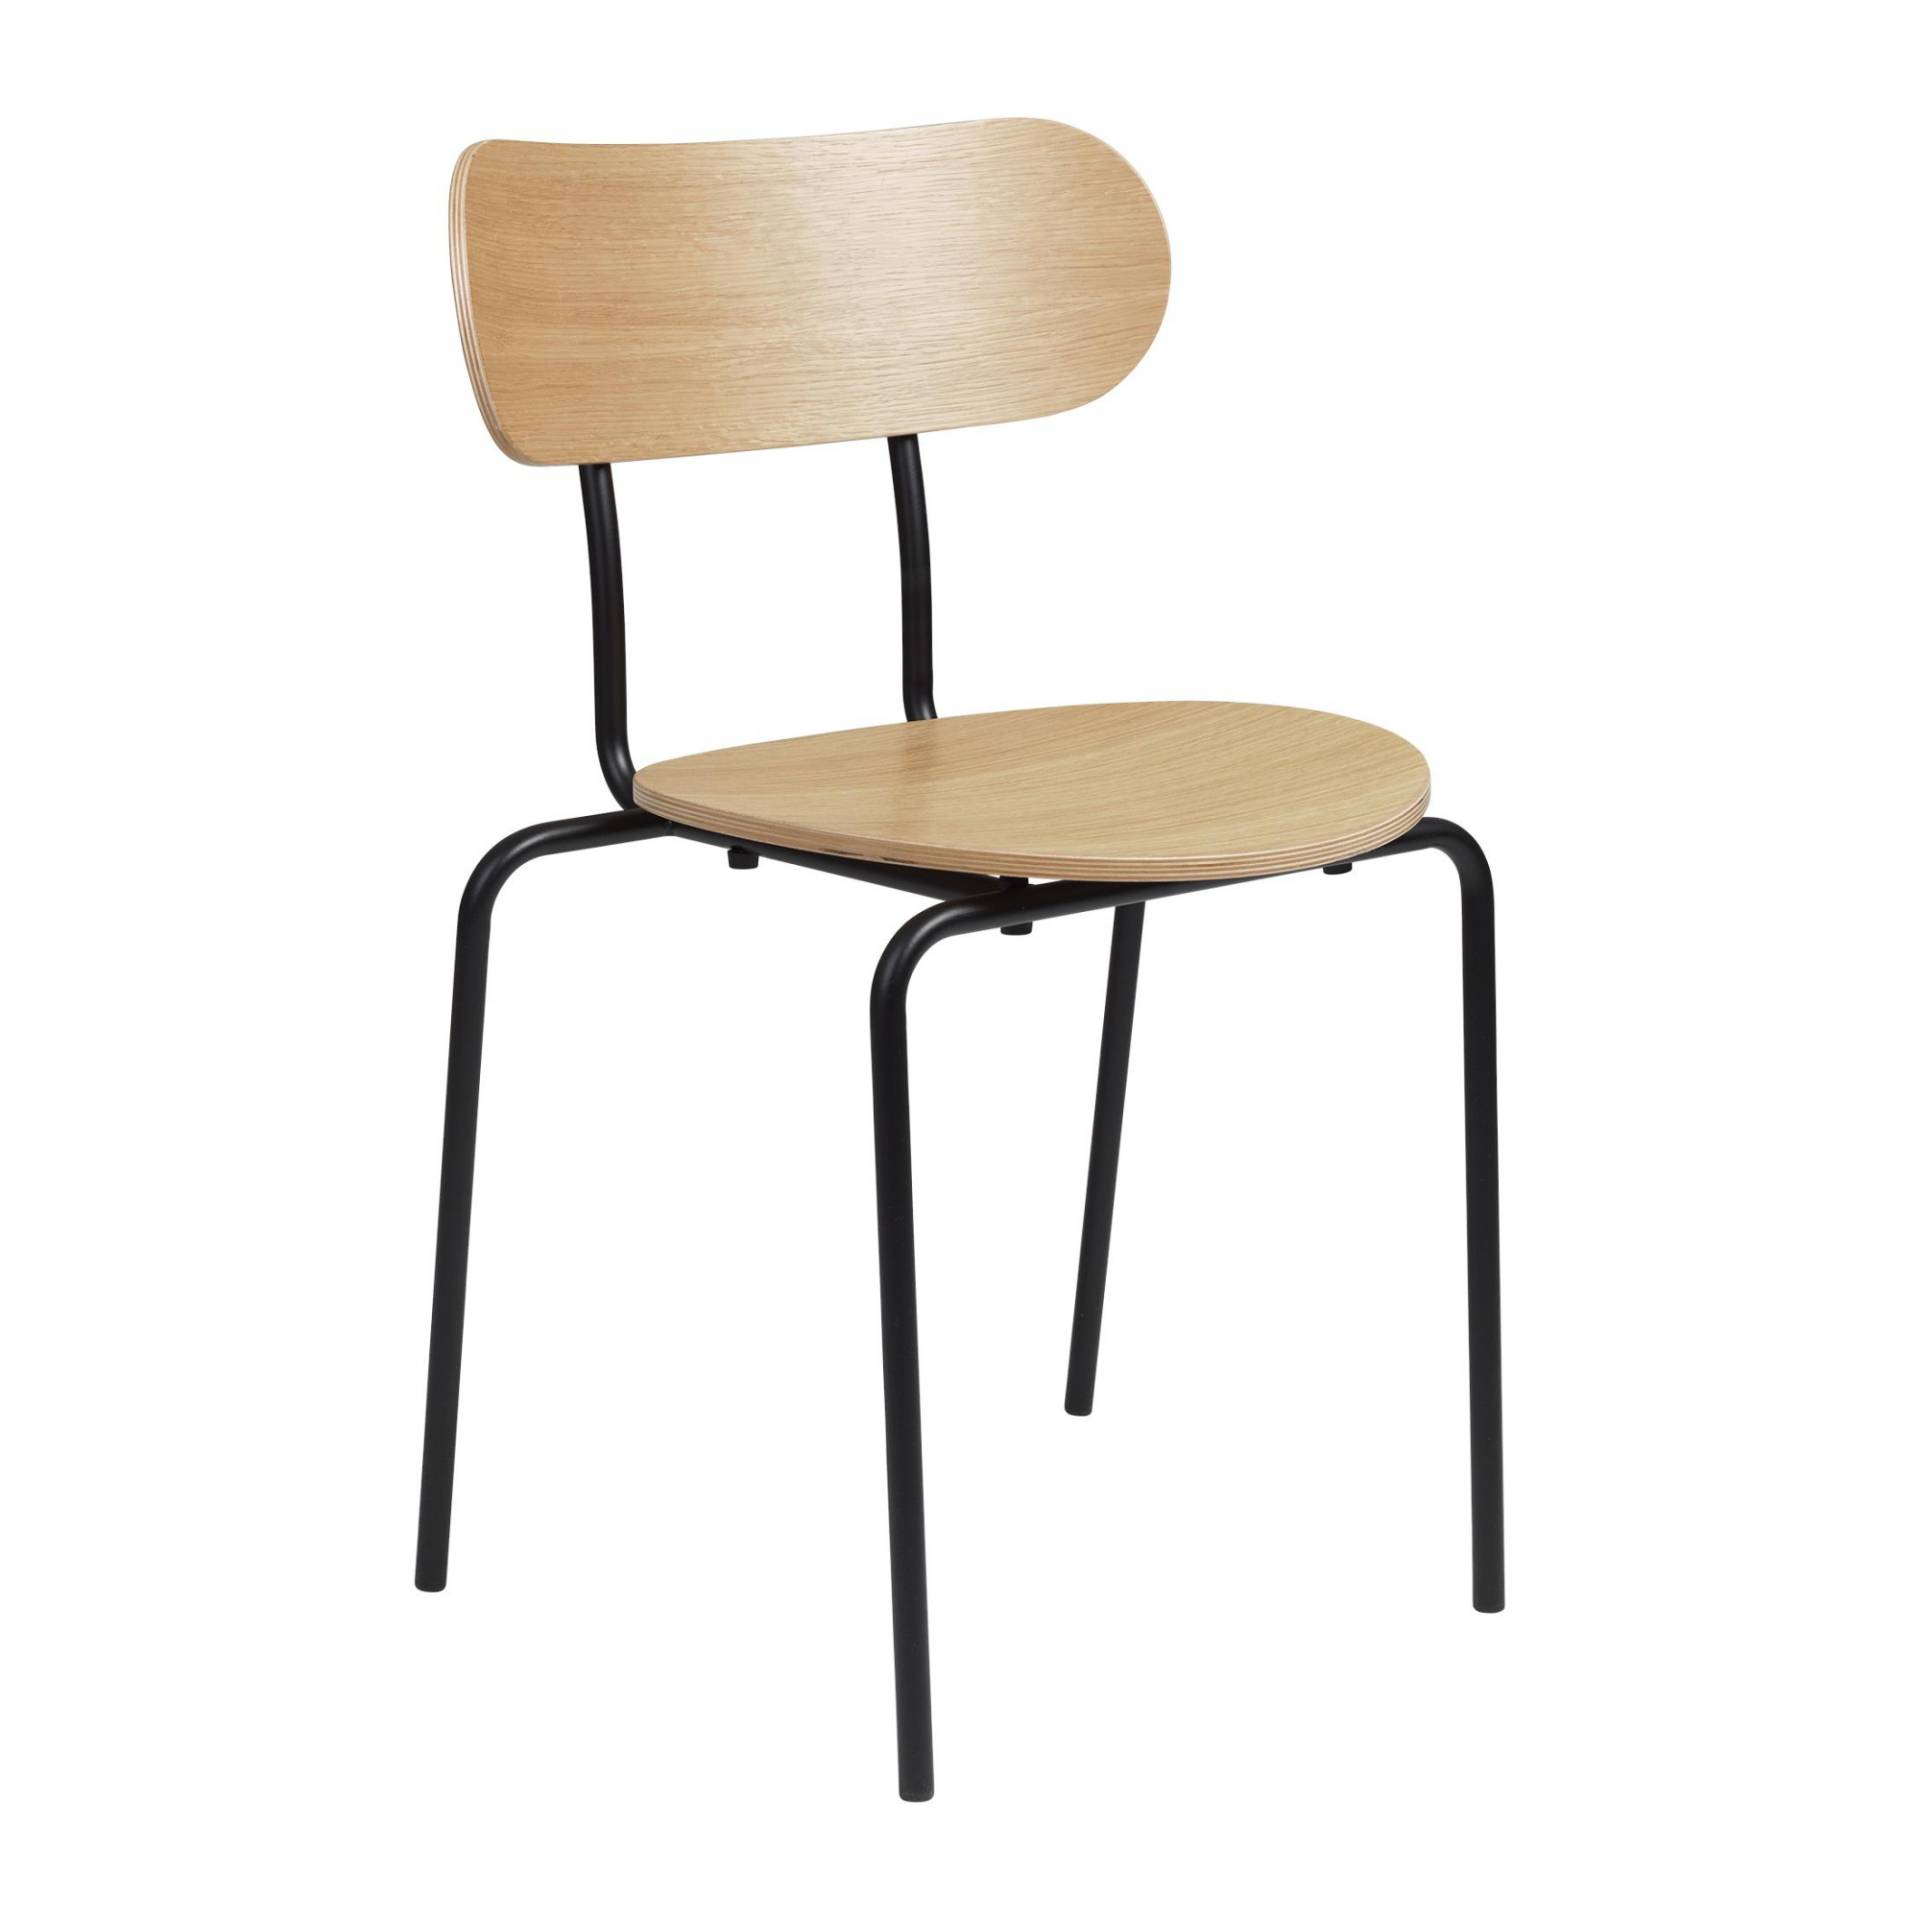 Gubi - Coco Dining Chair stapelbar - Eiche lackiert/BxTxH 50x53x81cm/mit Kunststoffgleitern/Gestell Metall schwarz RAL 9005 matt lackiert von Gubi